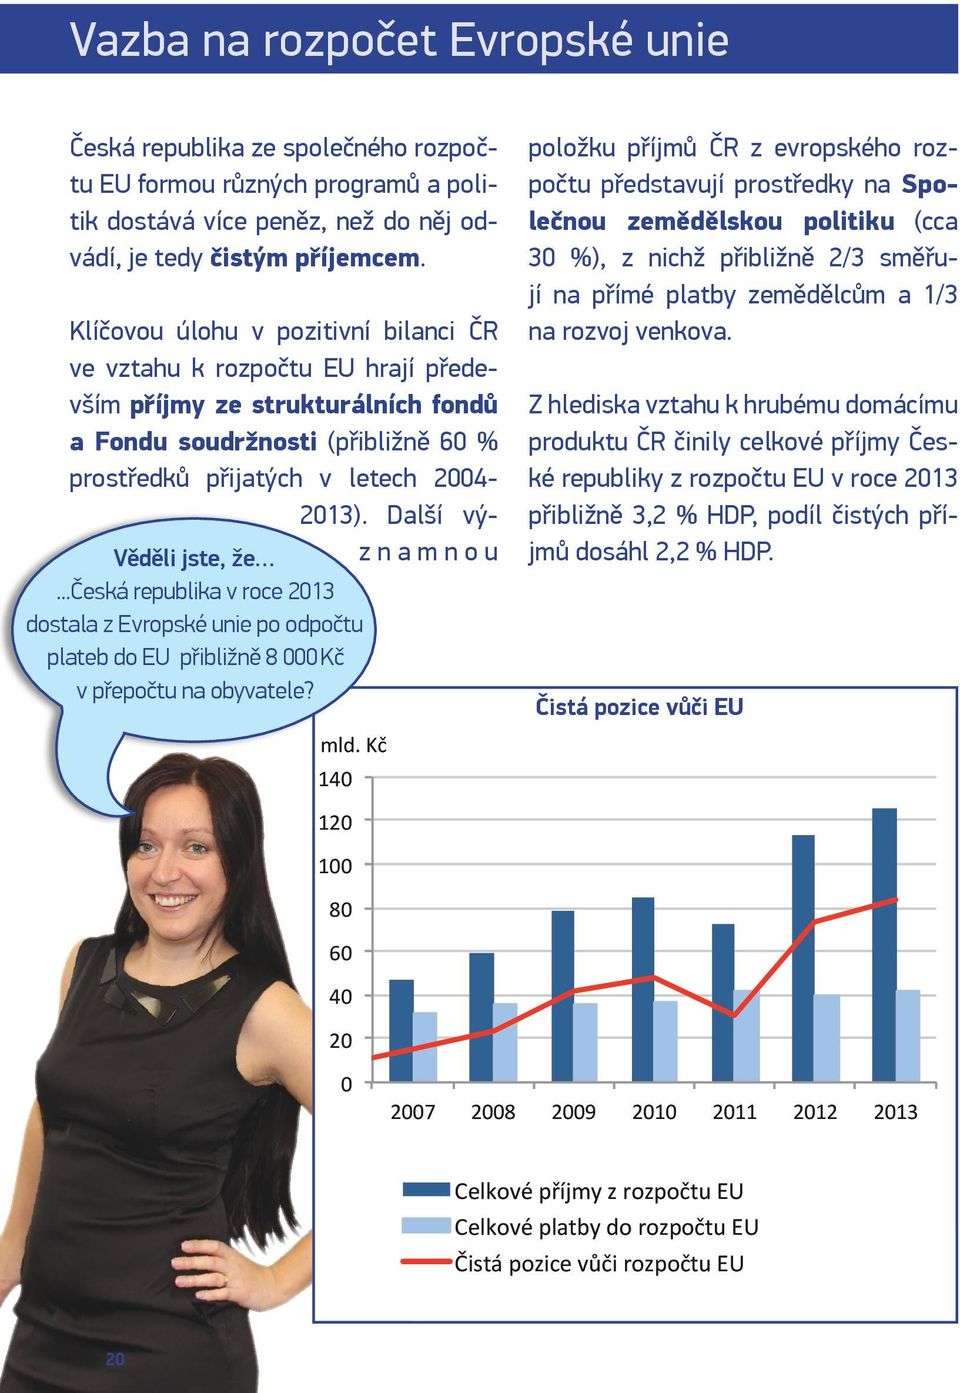 Další významnou Věděli jste, že...česká republika v roce 2013 dostala z Evropské unie po odpočtu plateb do EU přibližně 8 000 Kč v přepočtu na obyvatele?